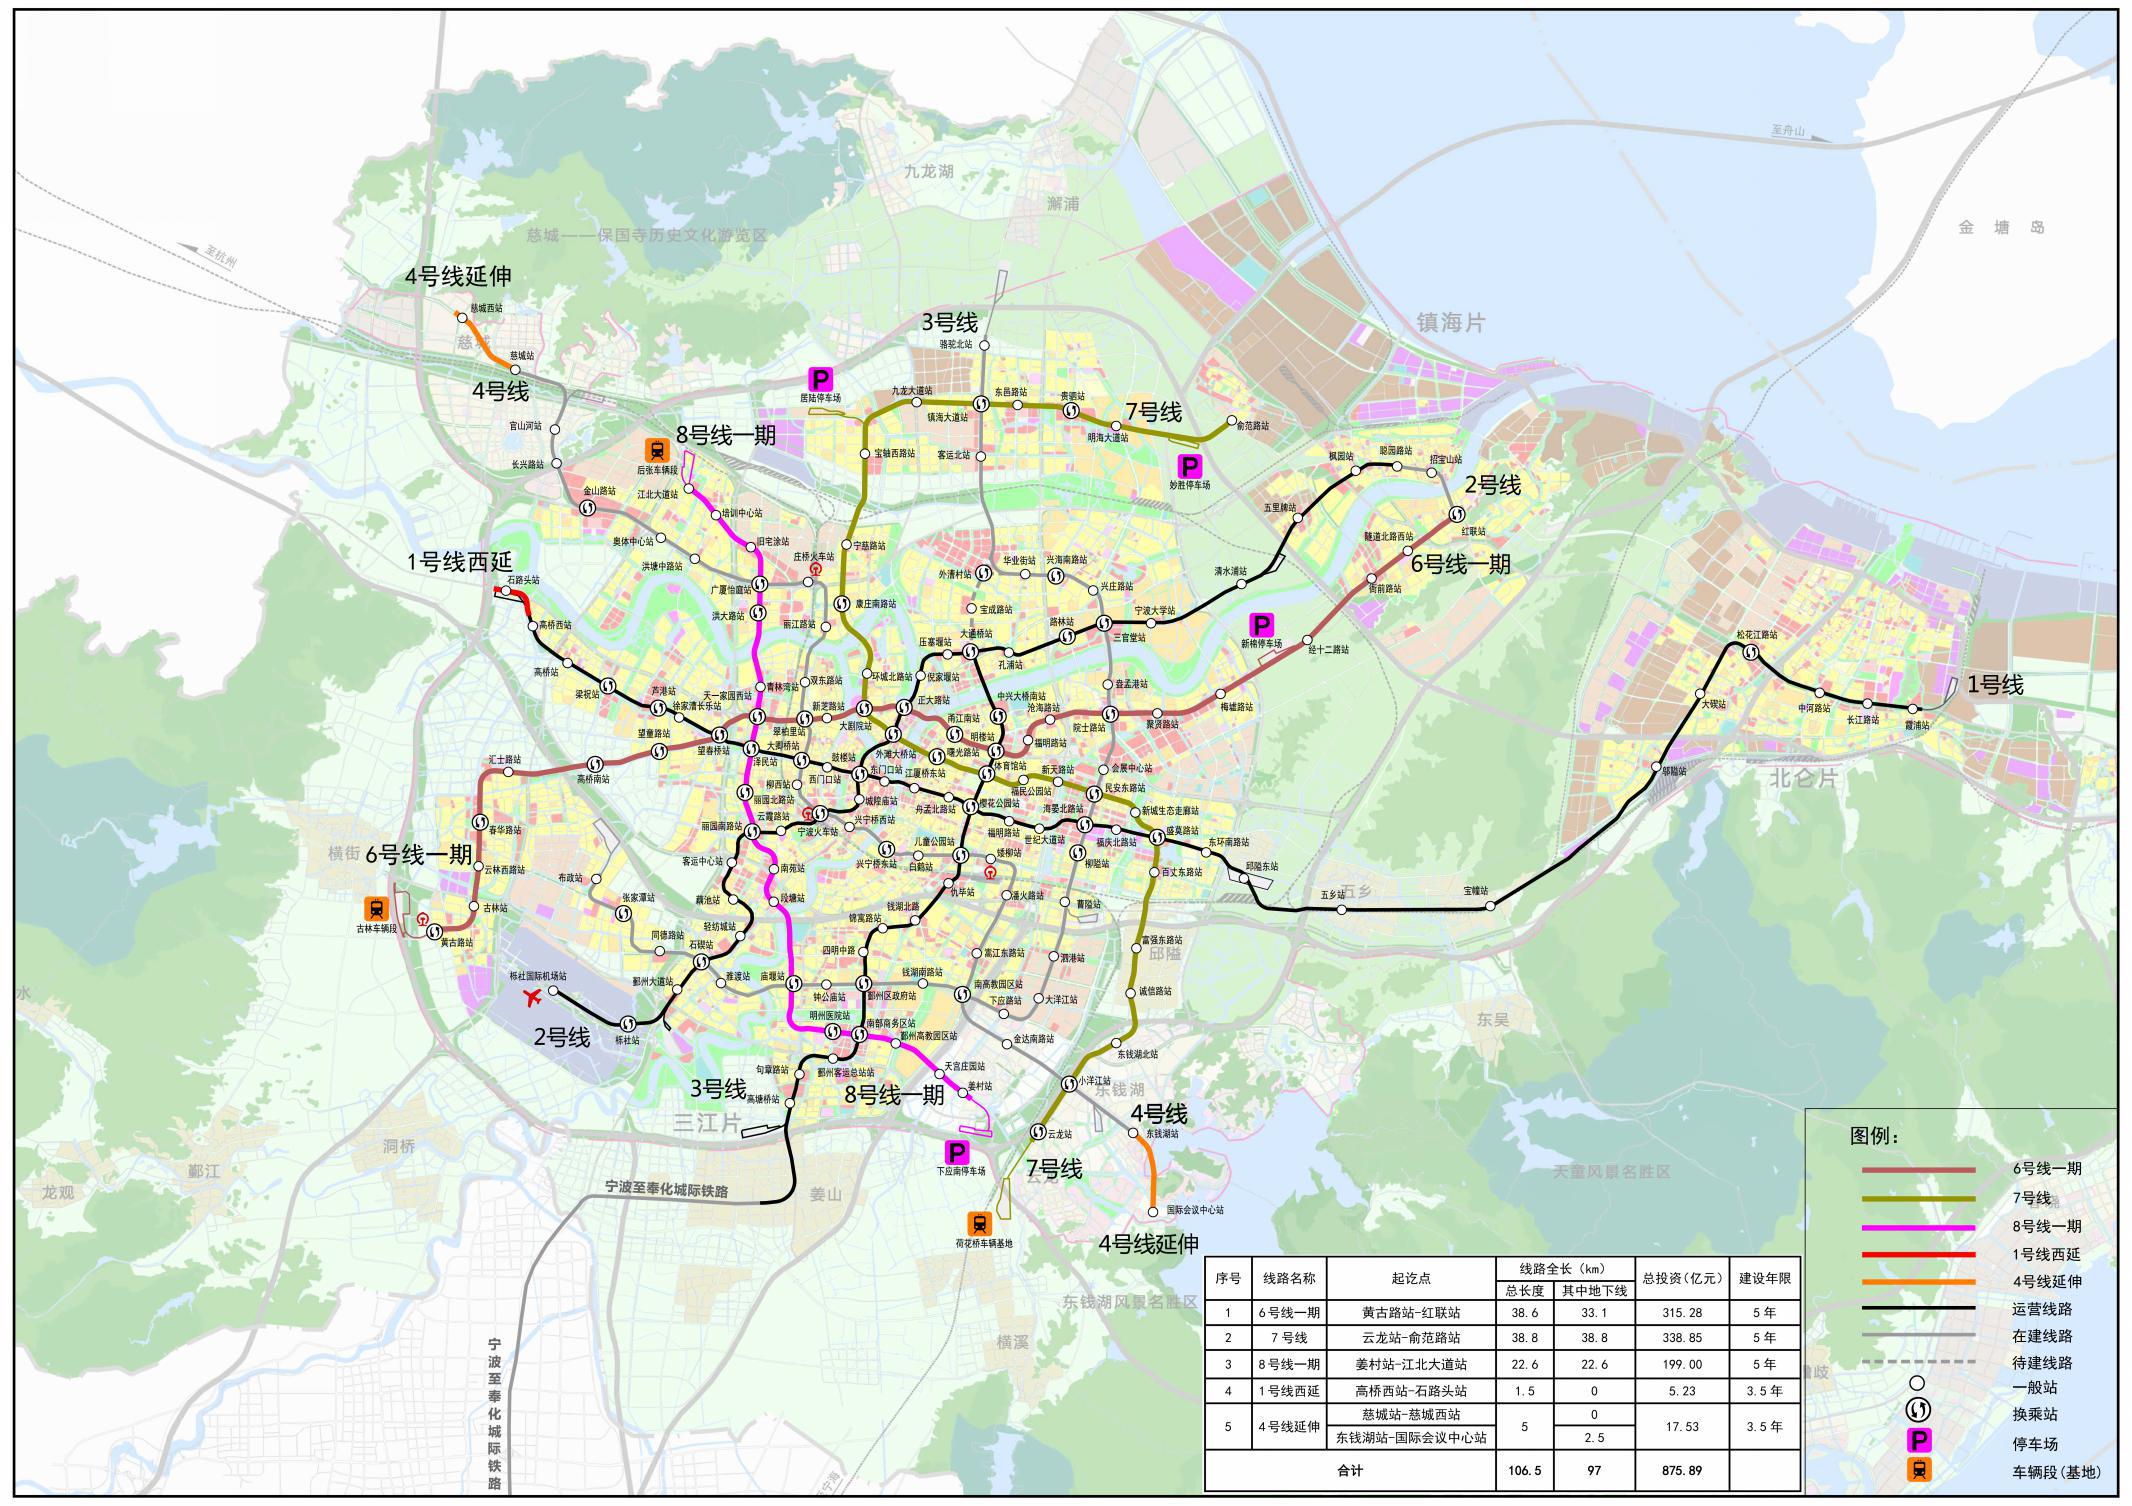 年) 一,线网规划 宁波市轨道交通 2035 年线网由 10 条线组成,总规模